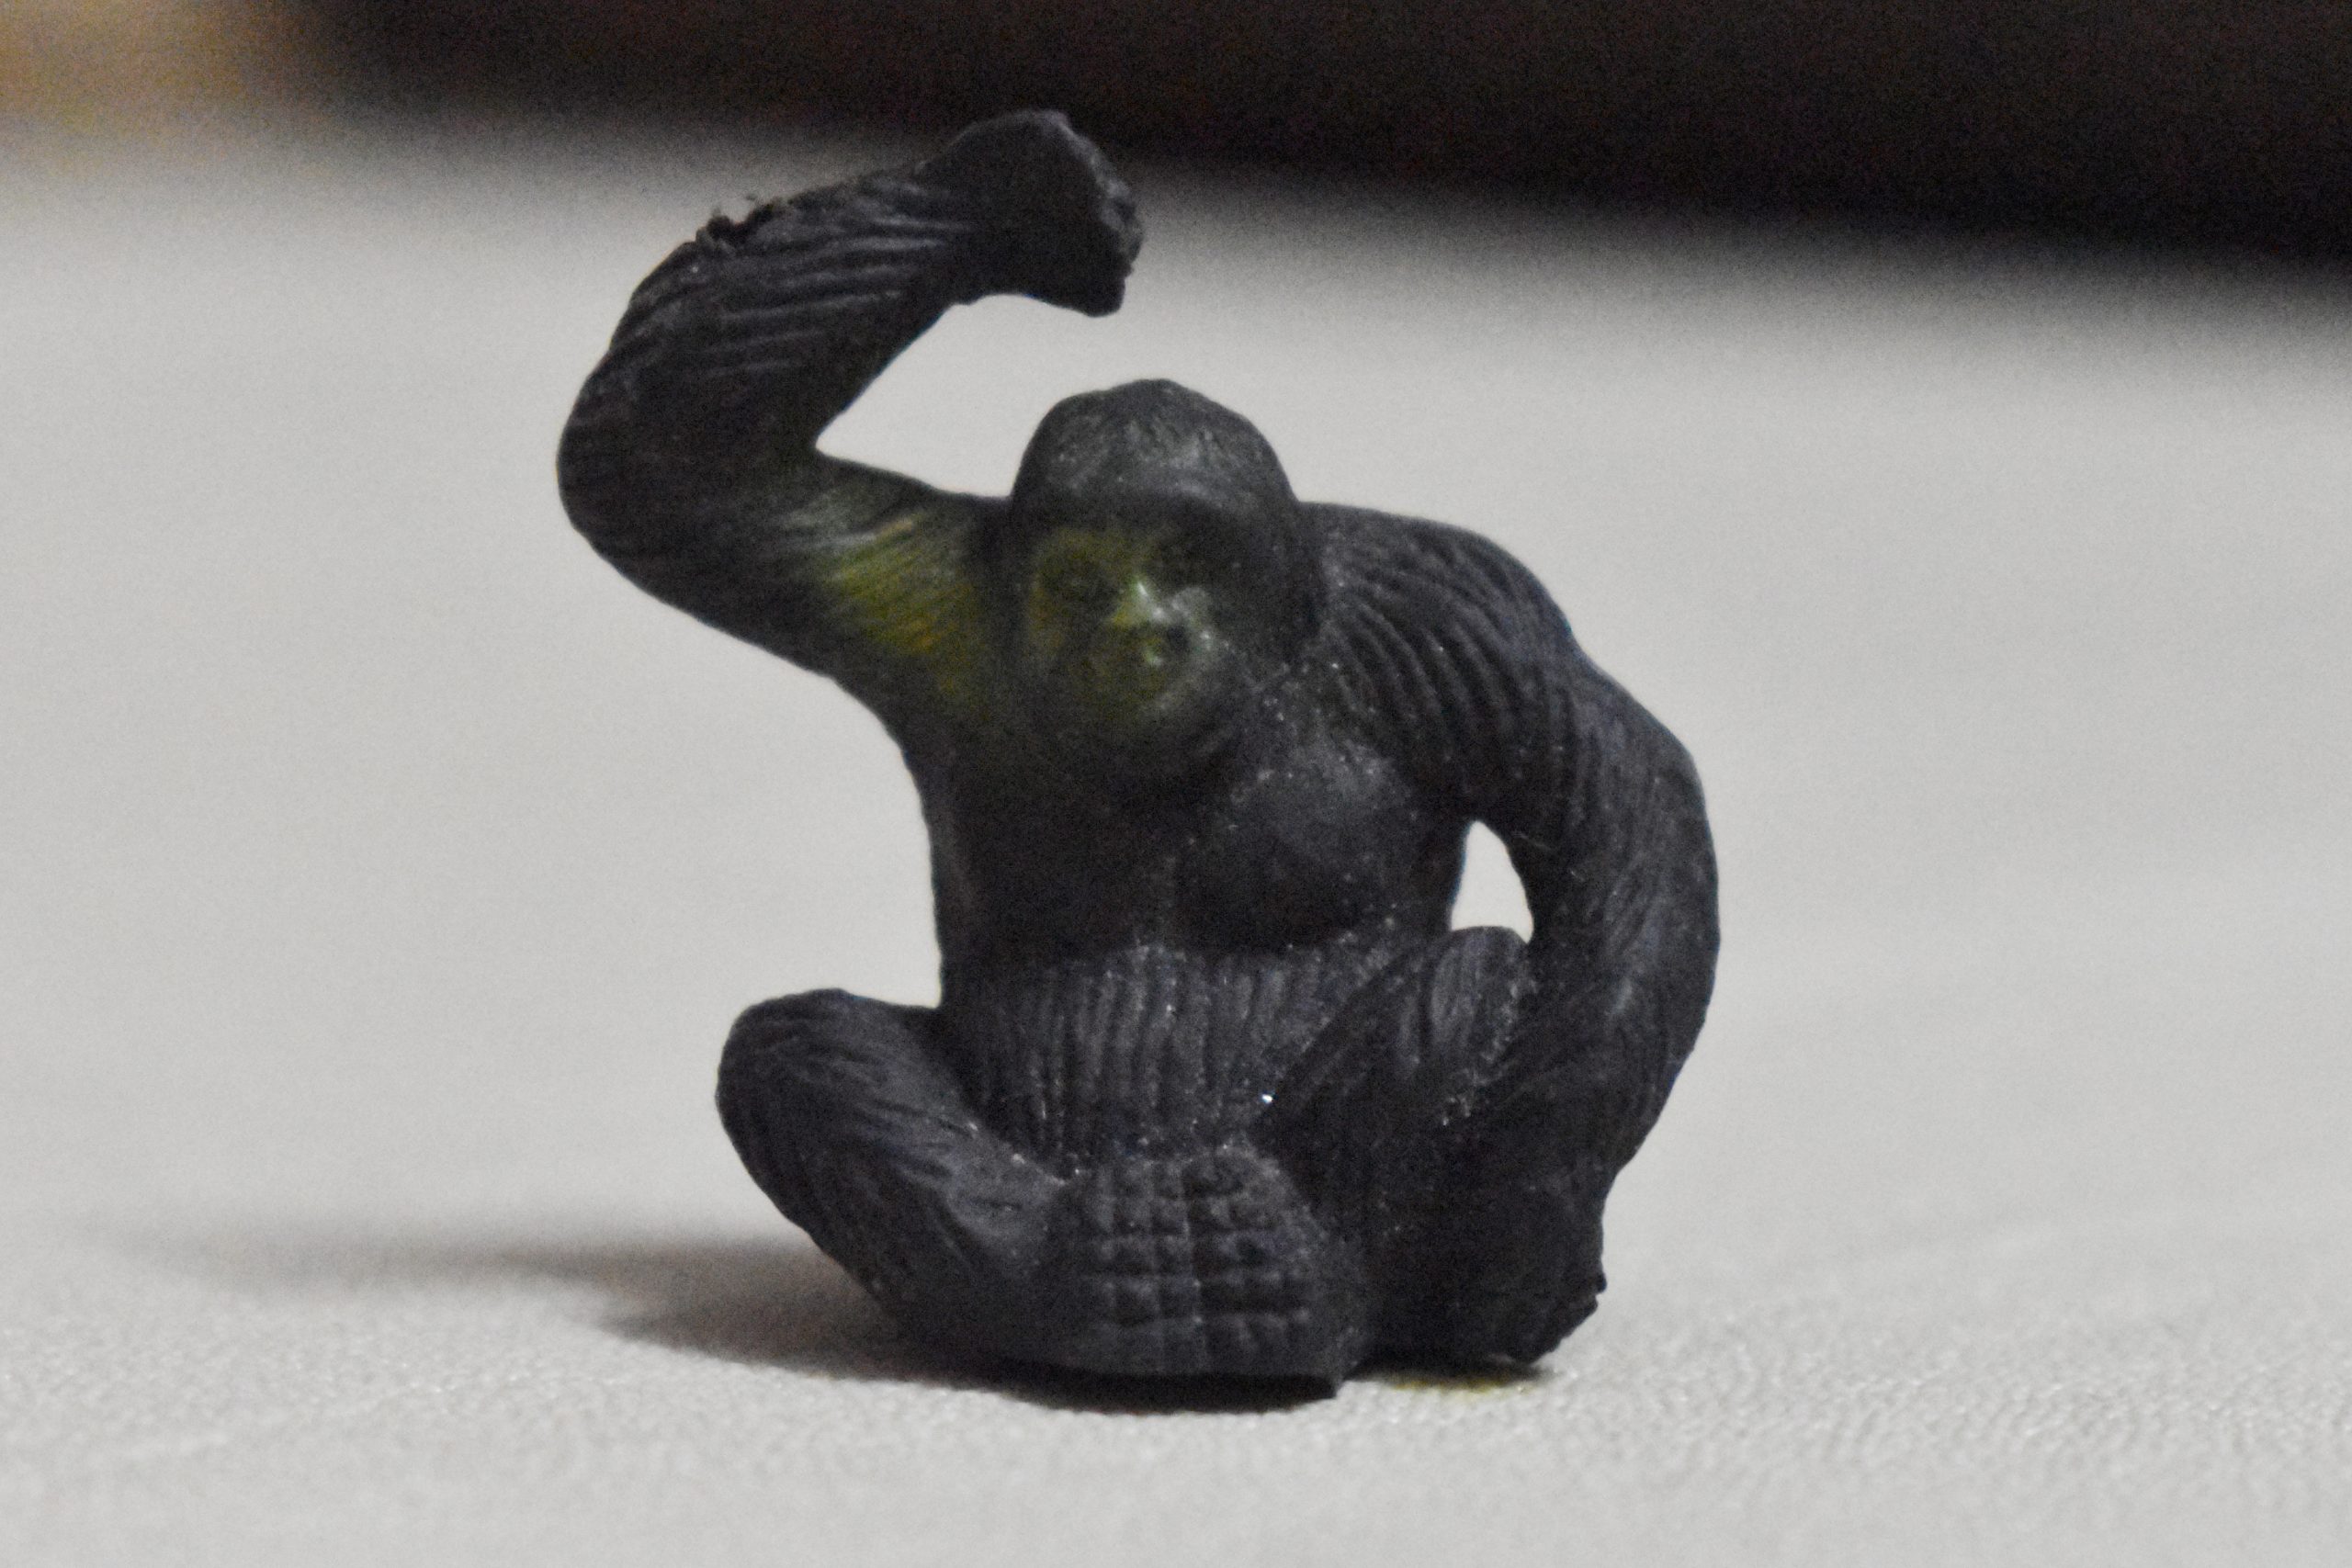 A toy gorilla